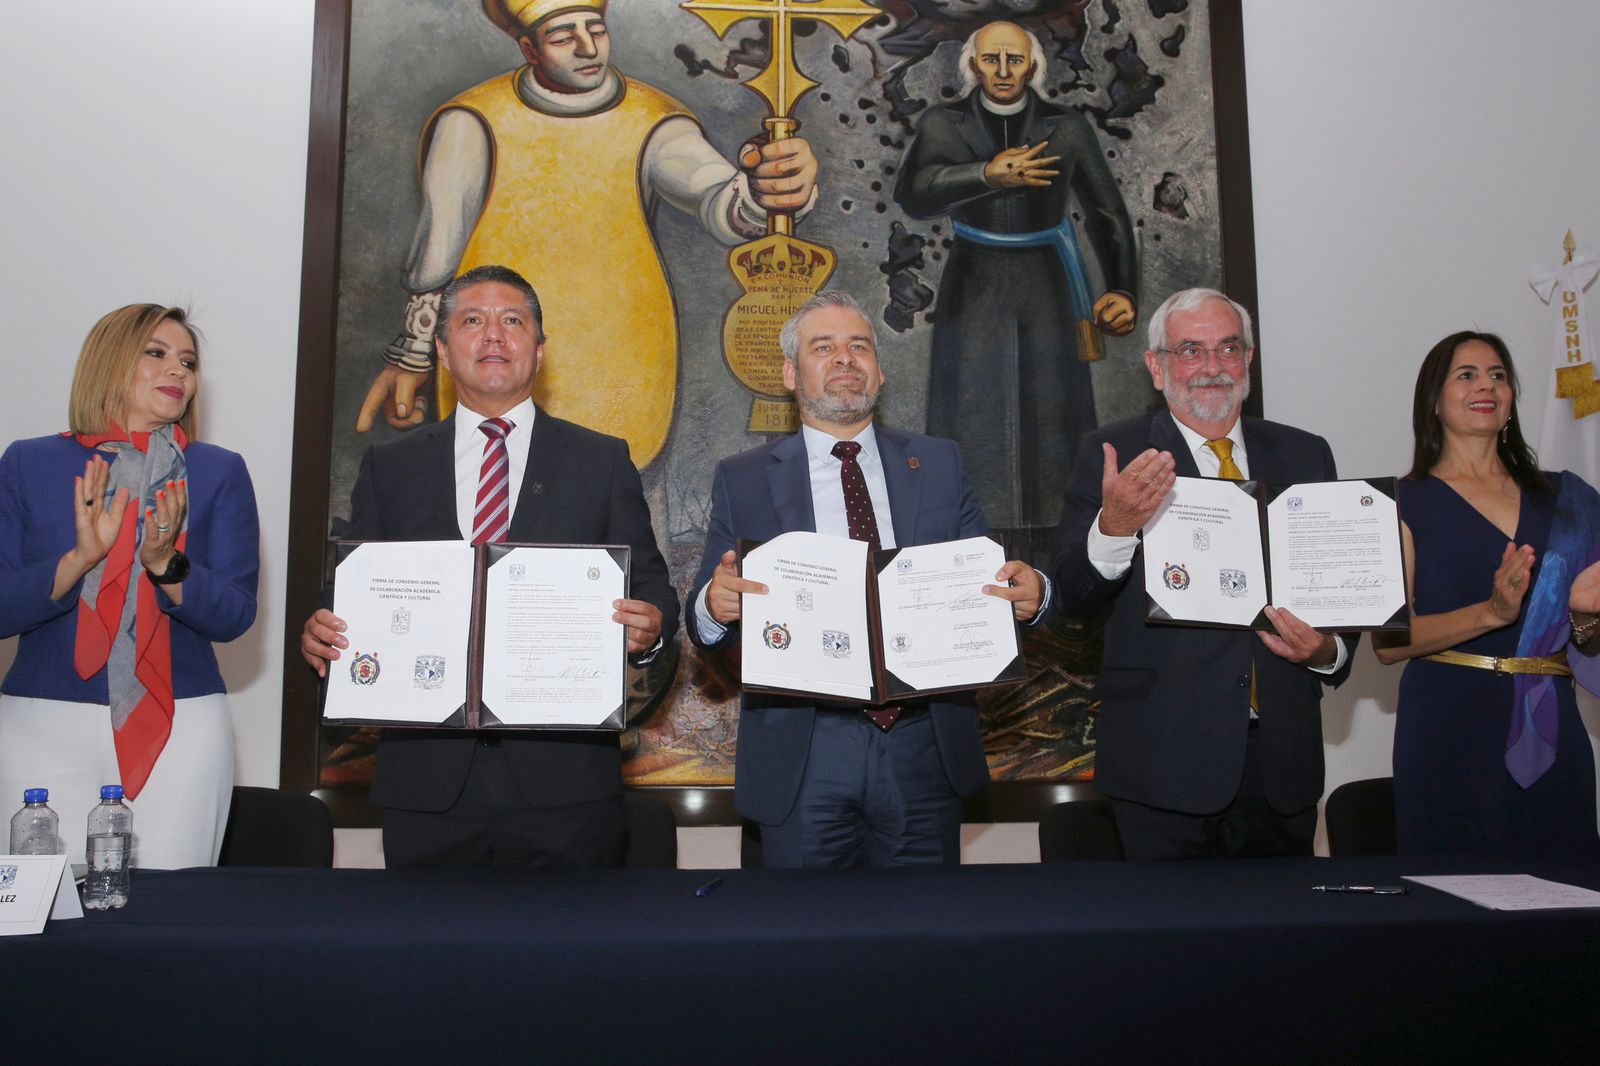 *Gobierno de Michoacán y UNAM acuerdan colaboración por el desarrollo*